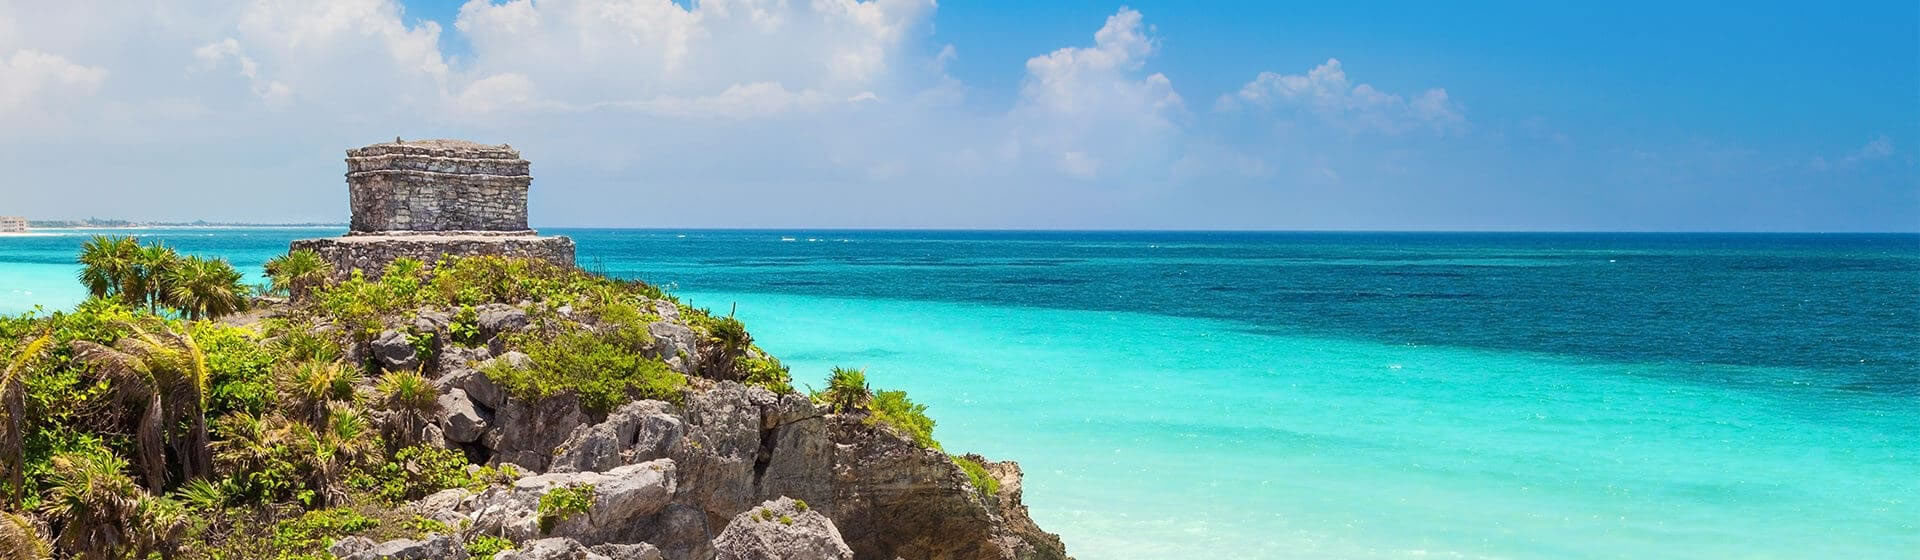 Riviera Maya